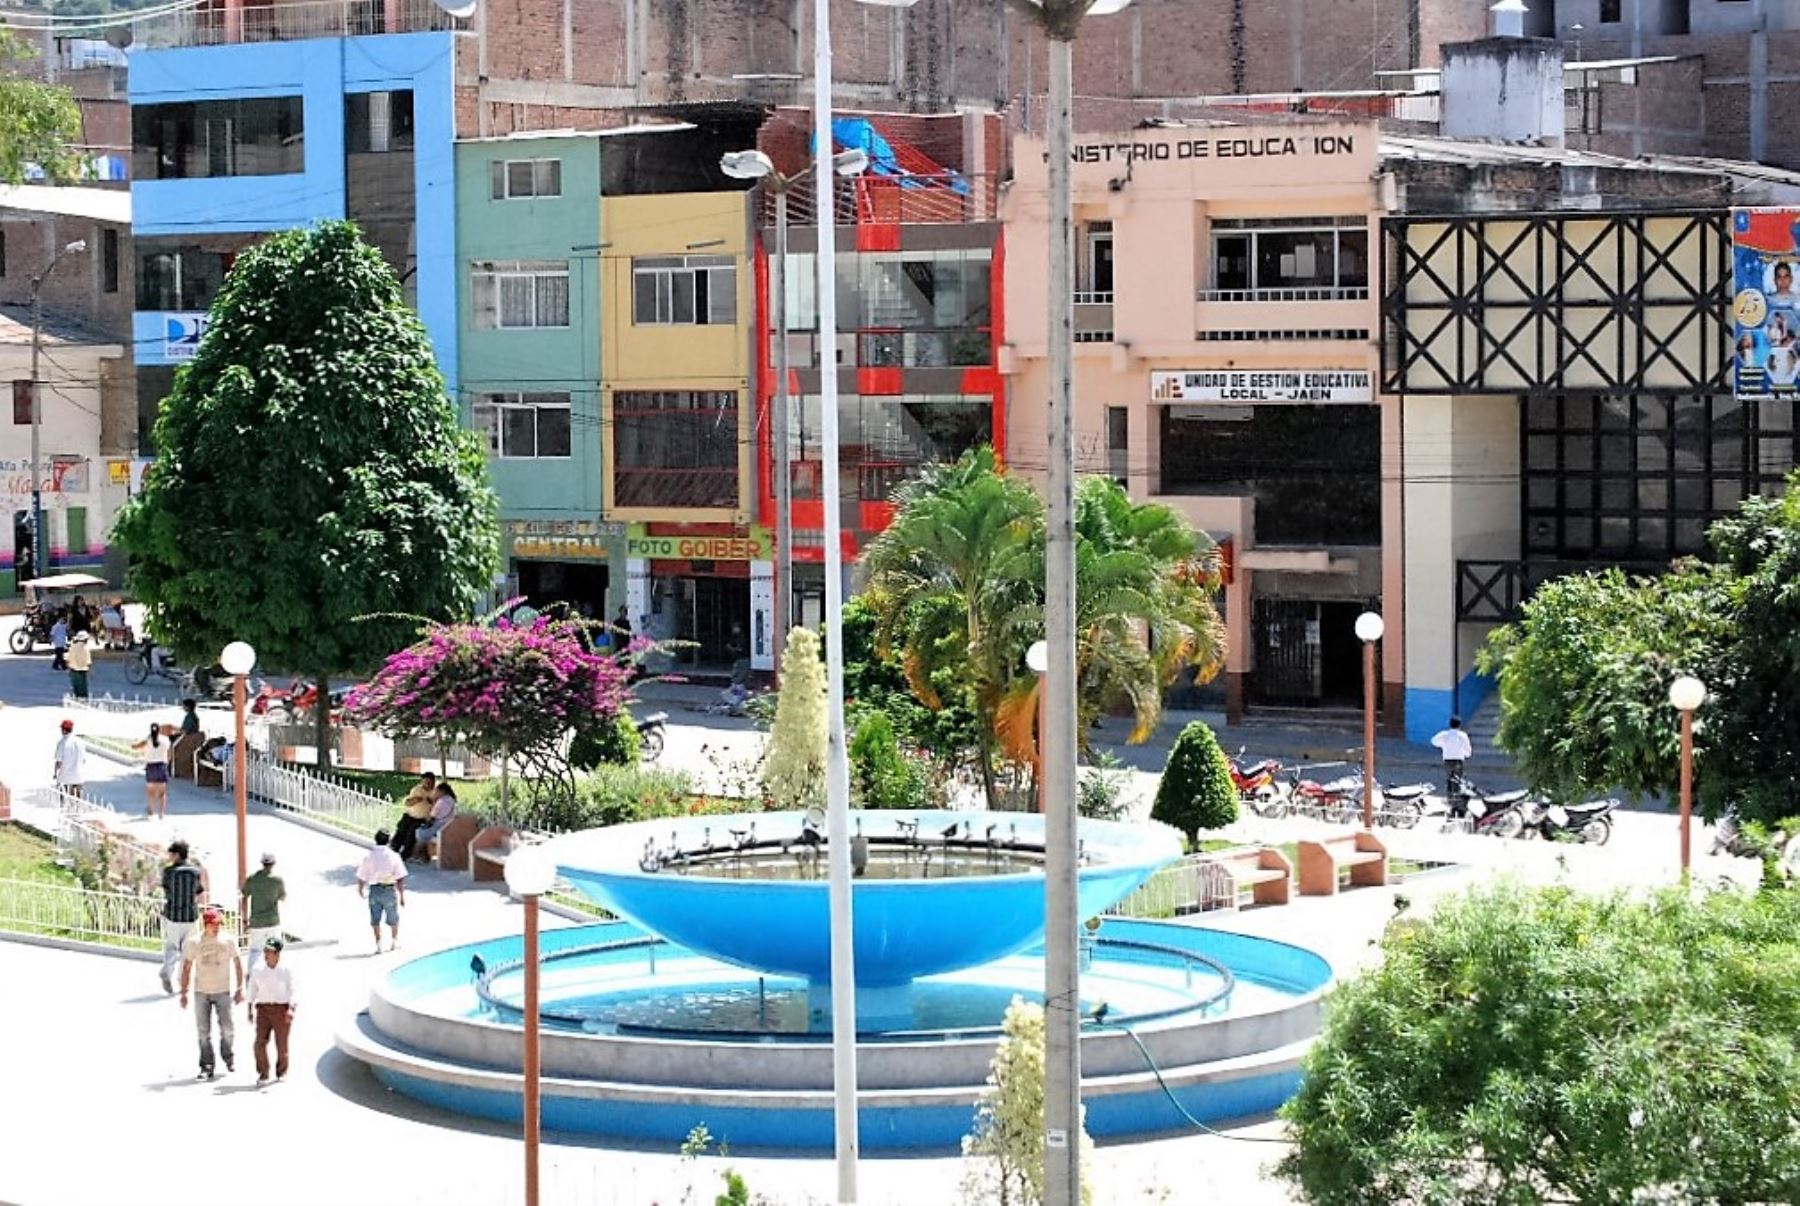 Se realizará un estudio para hallar una solución al problema del transporte urbano en la ciudad de Jaén, en Cajamarca. Foto: ANDINA/archivo.